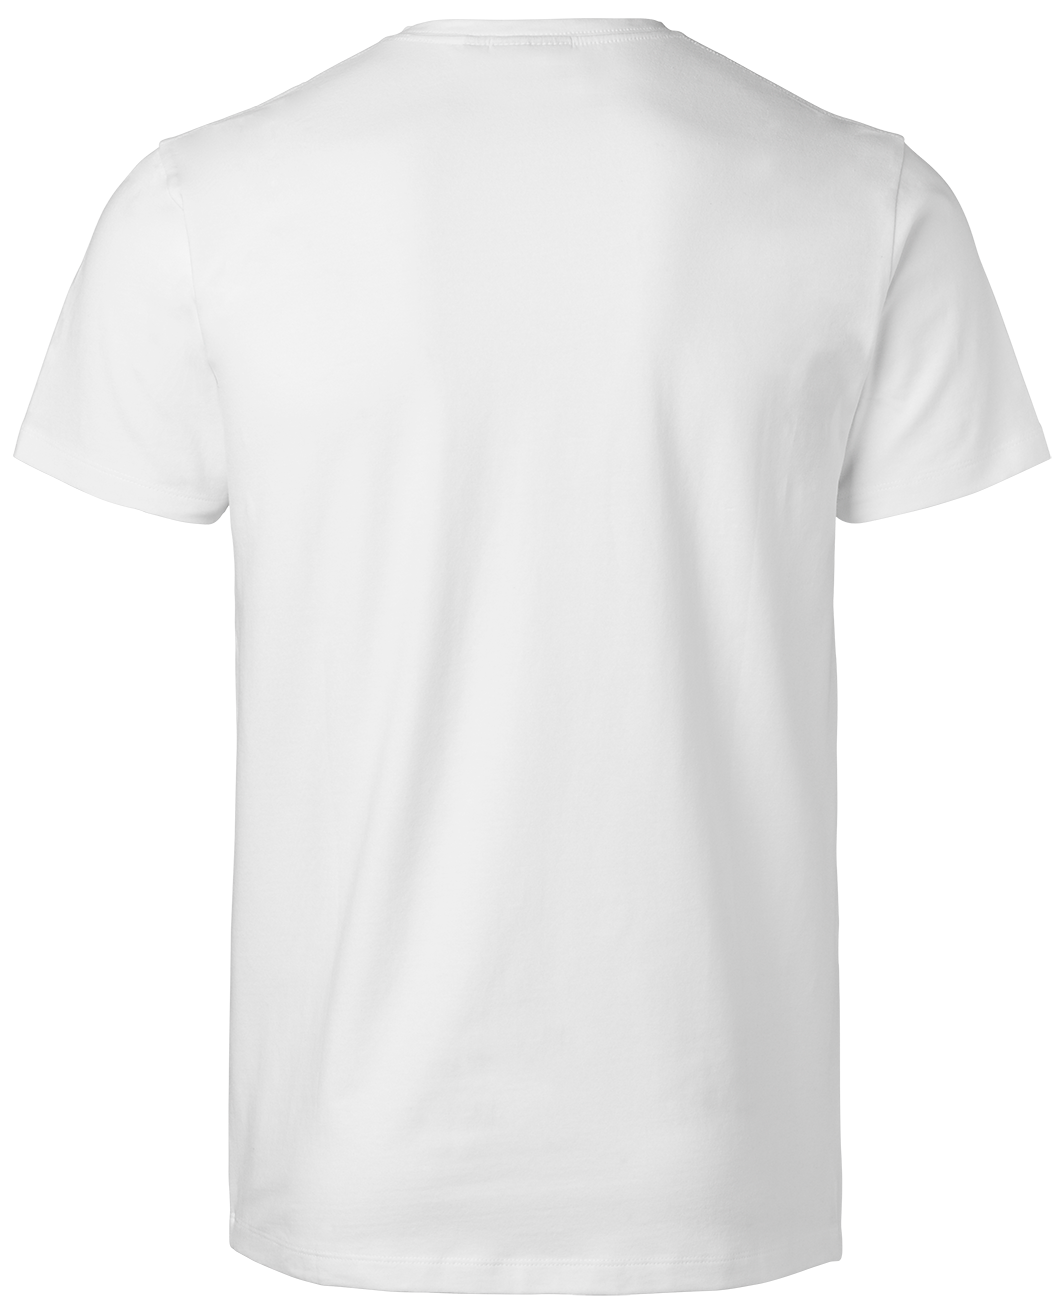 T-shirt stretch V-neck Vit 54